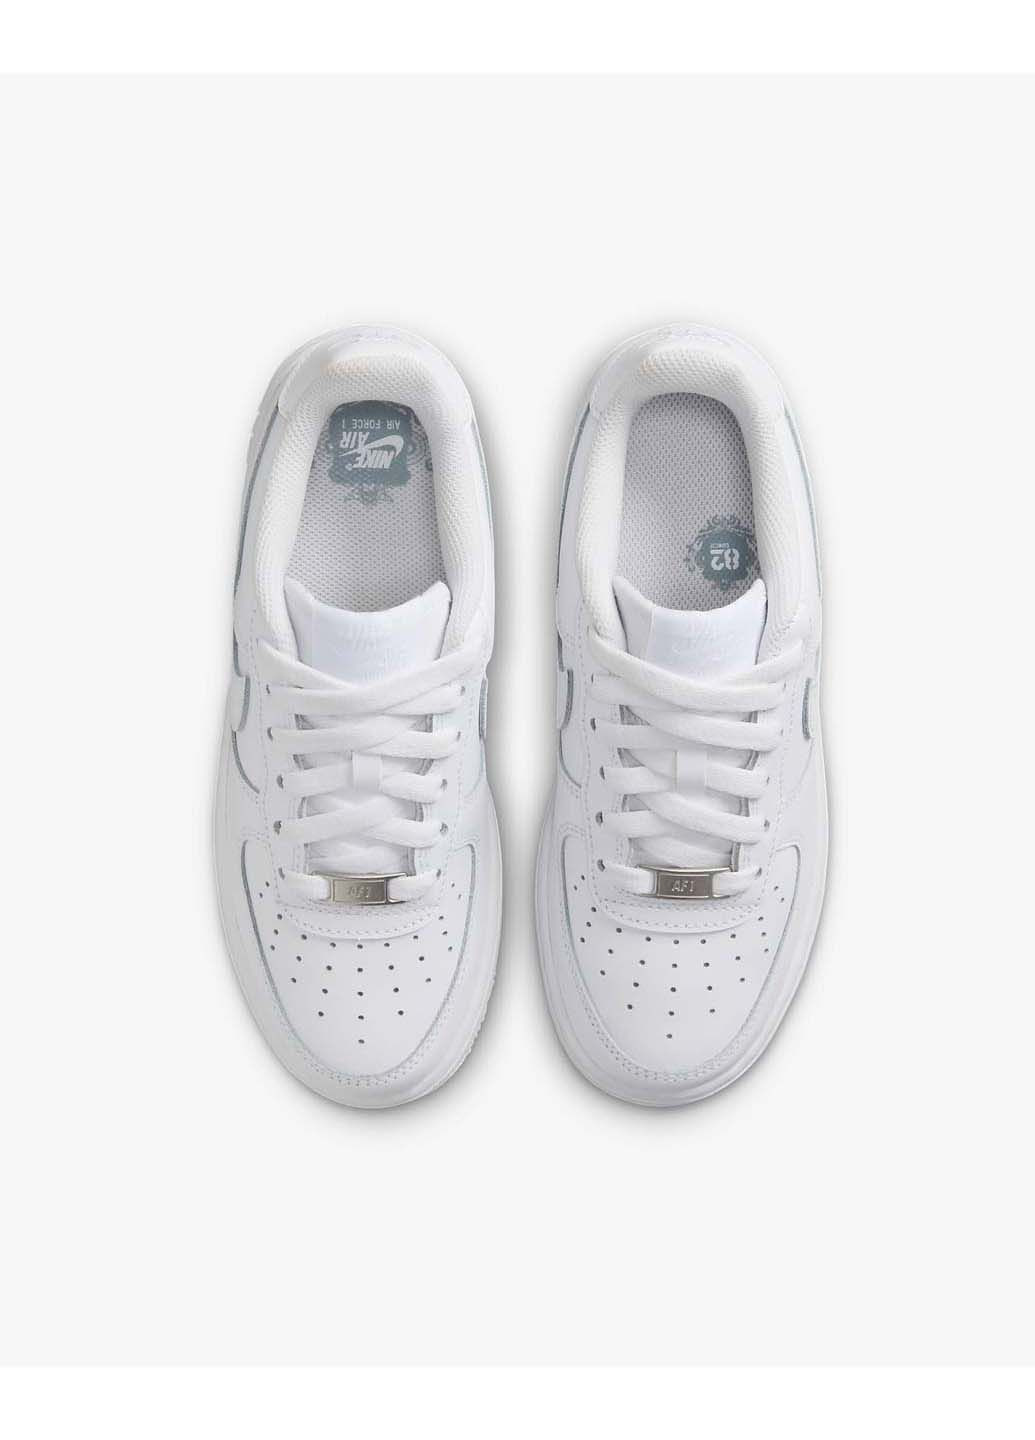 Белые демисезонные кроссовки женские air force 1 le gs Nike